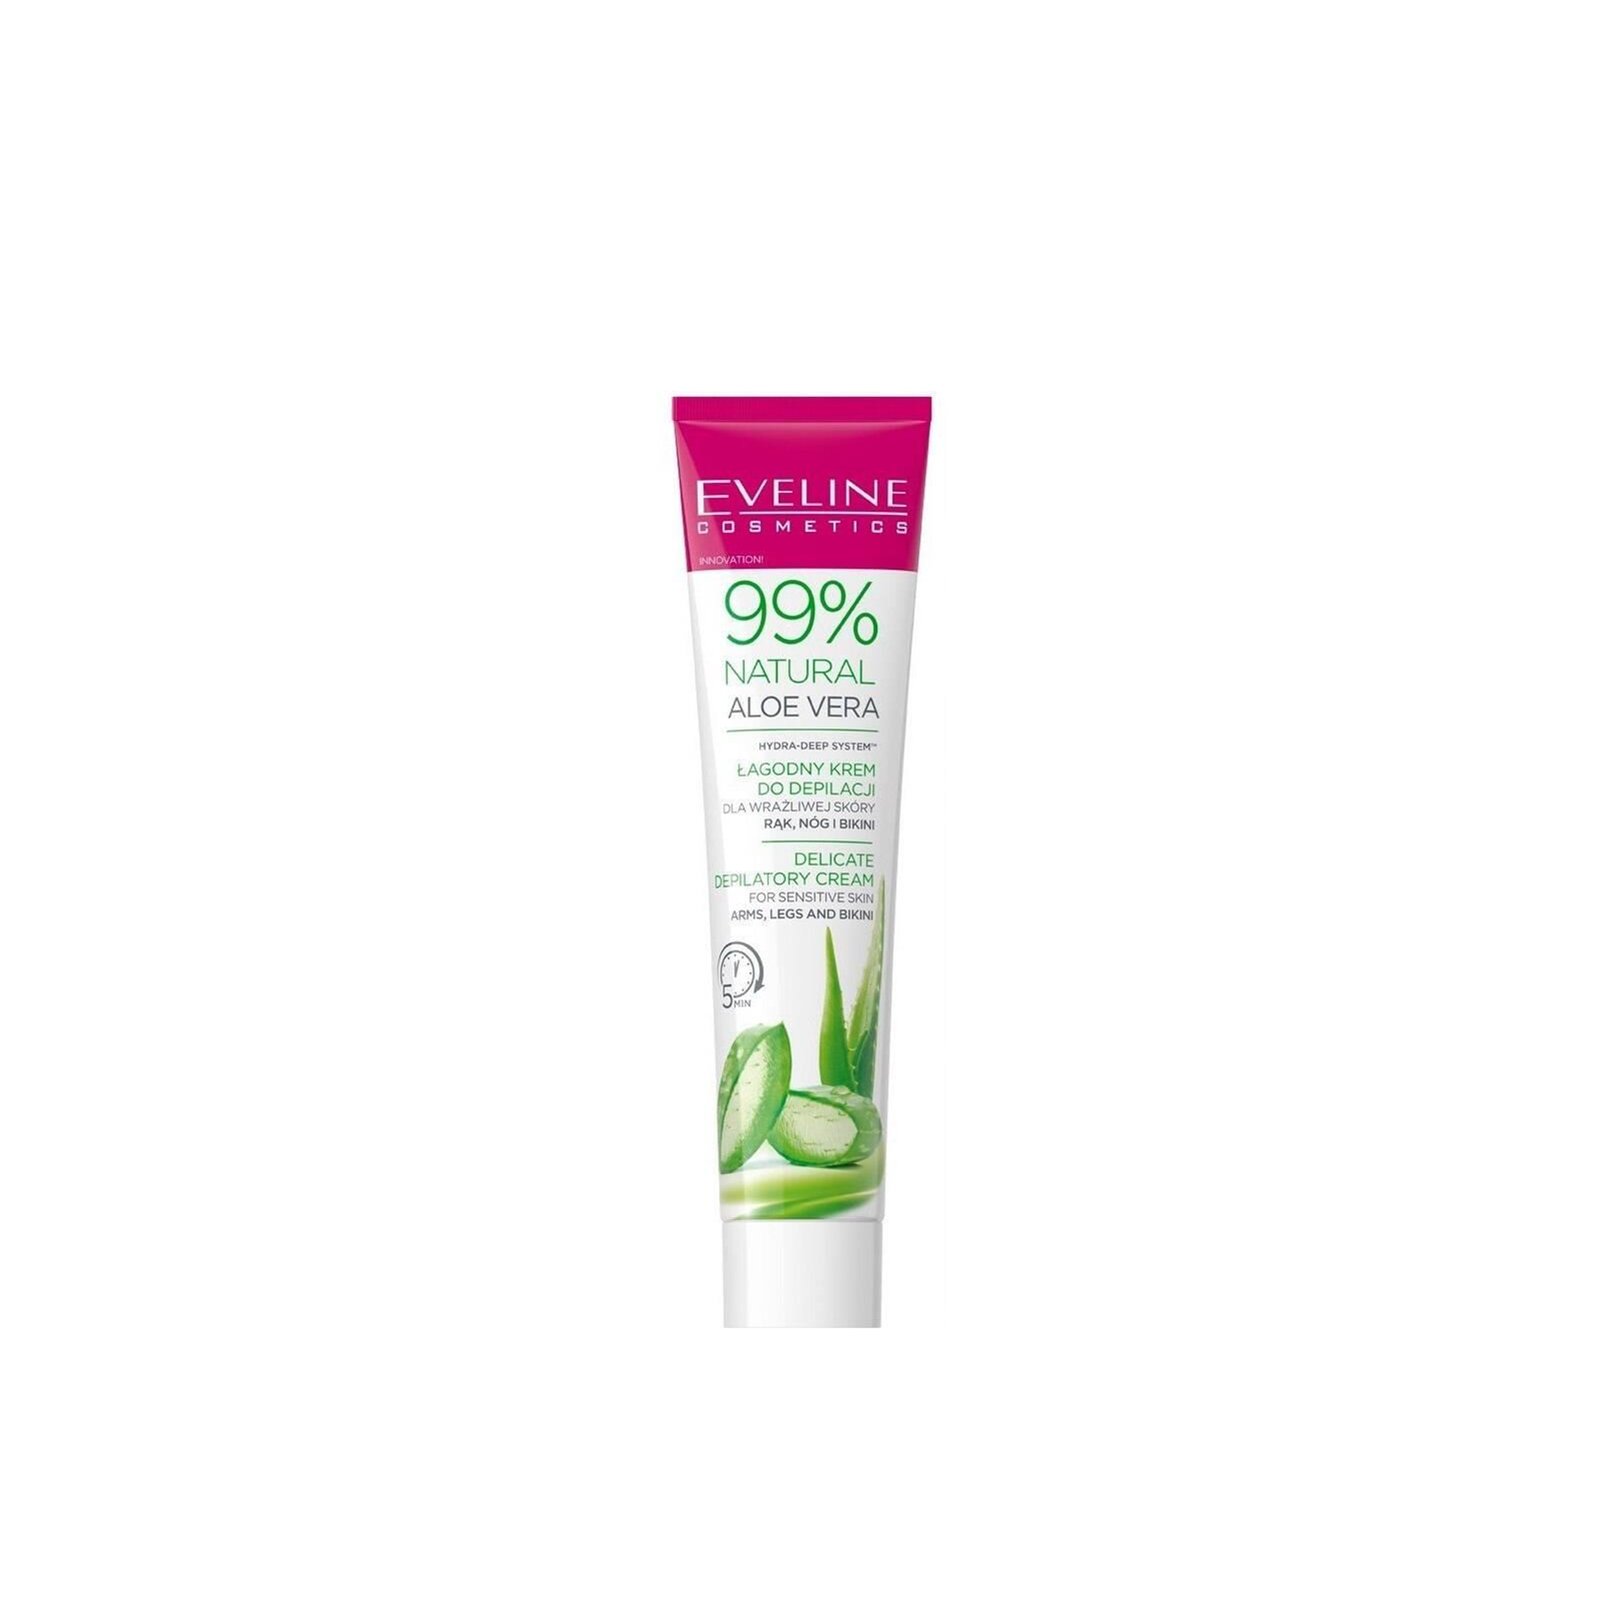 Eveline Cosmetics 99% Natural Aloe Vera Delicate Depilatory Cream 125ml (4.40 fl oz)